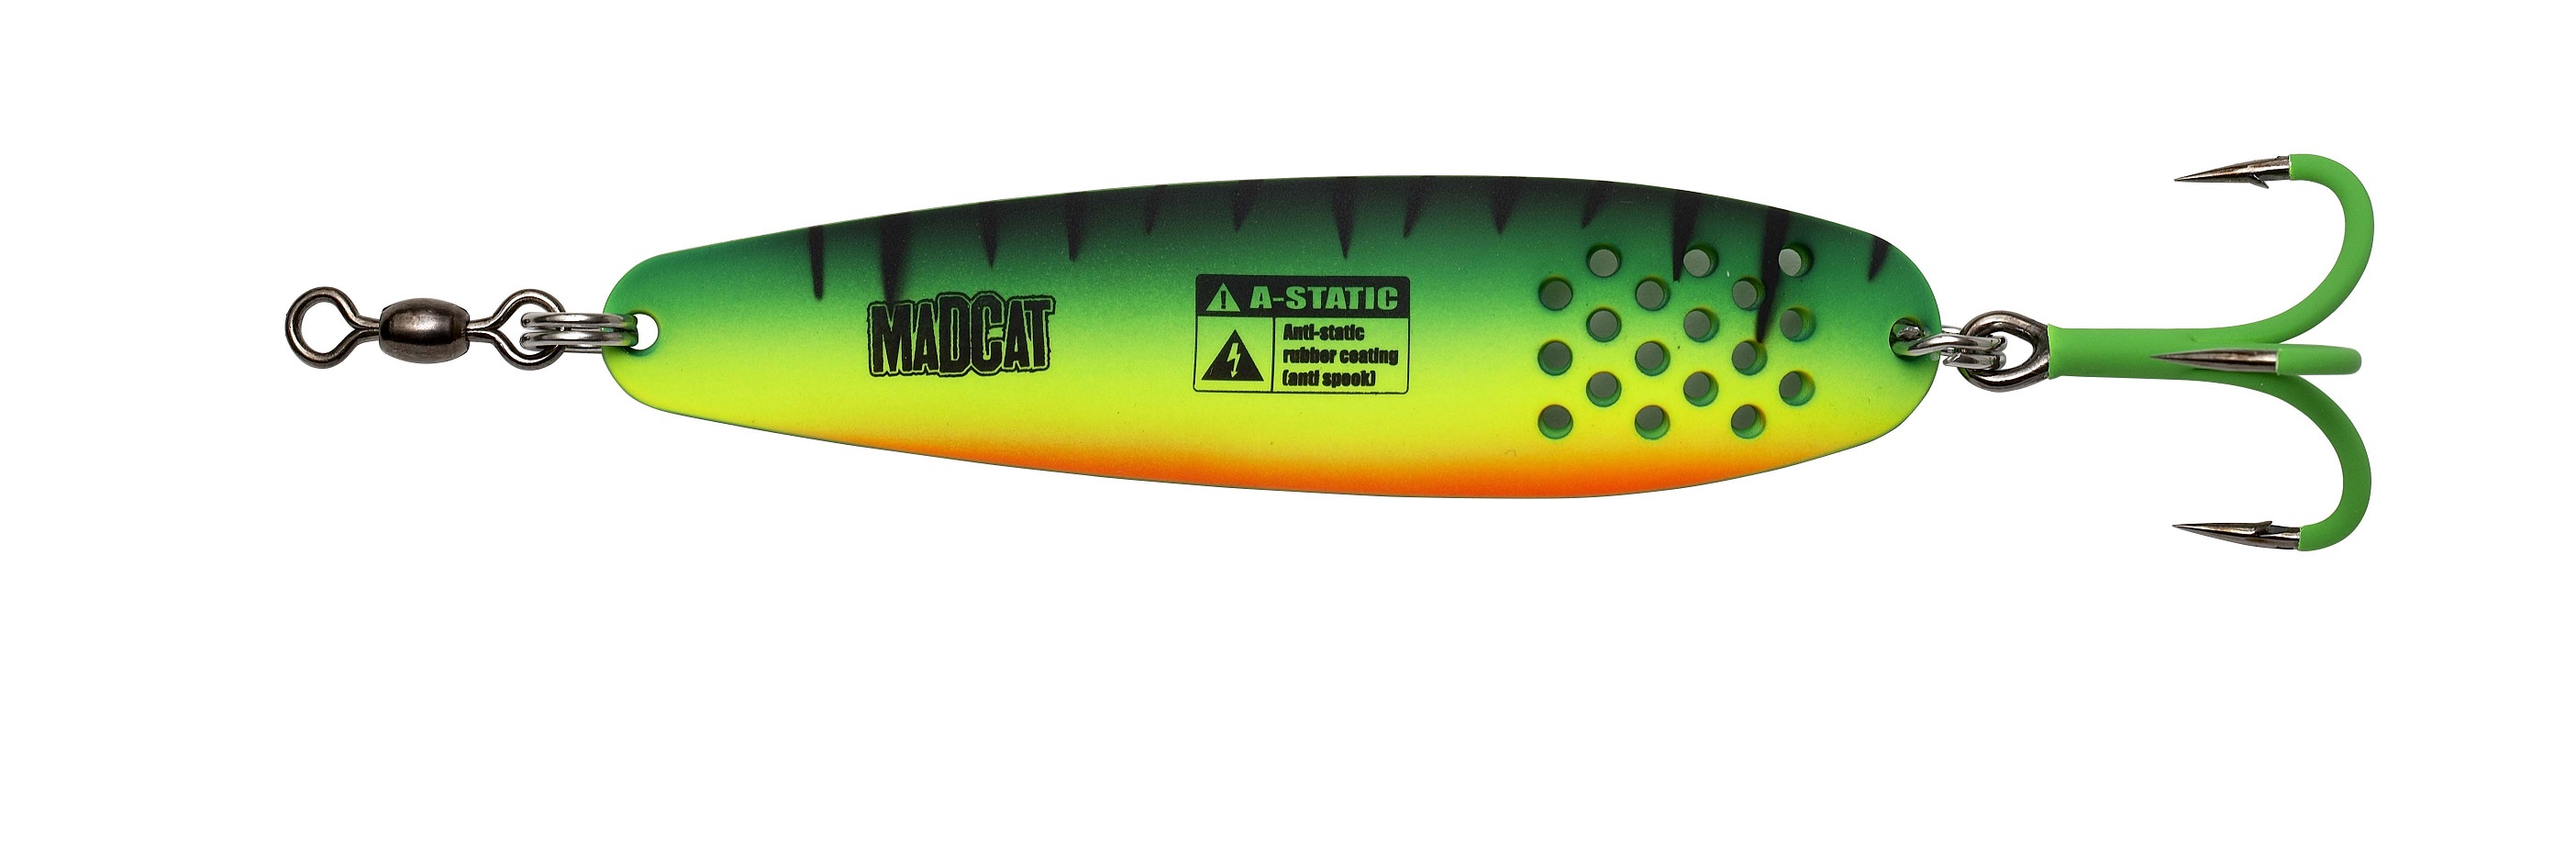 Madcat A-Static Turbine Catfish Spoon (90g) - Firetiger UV